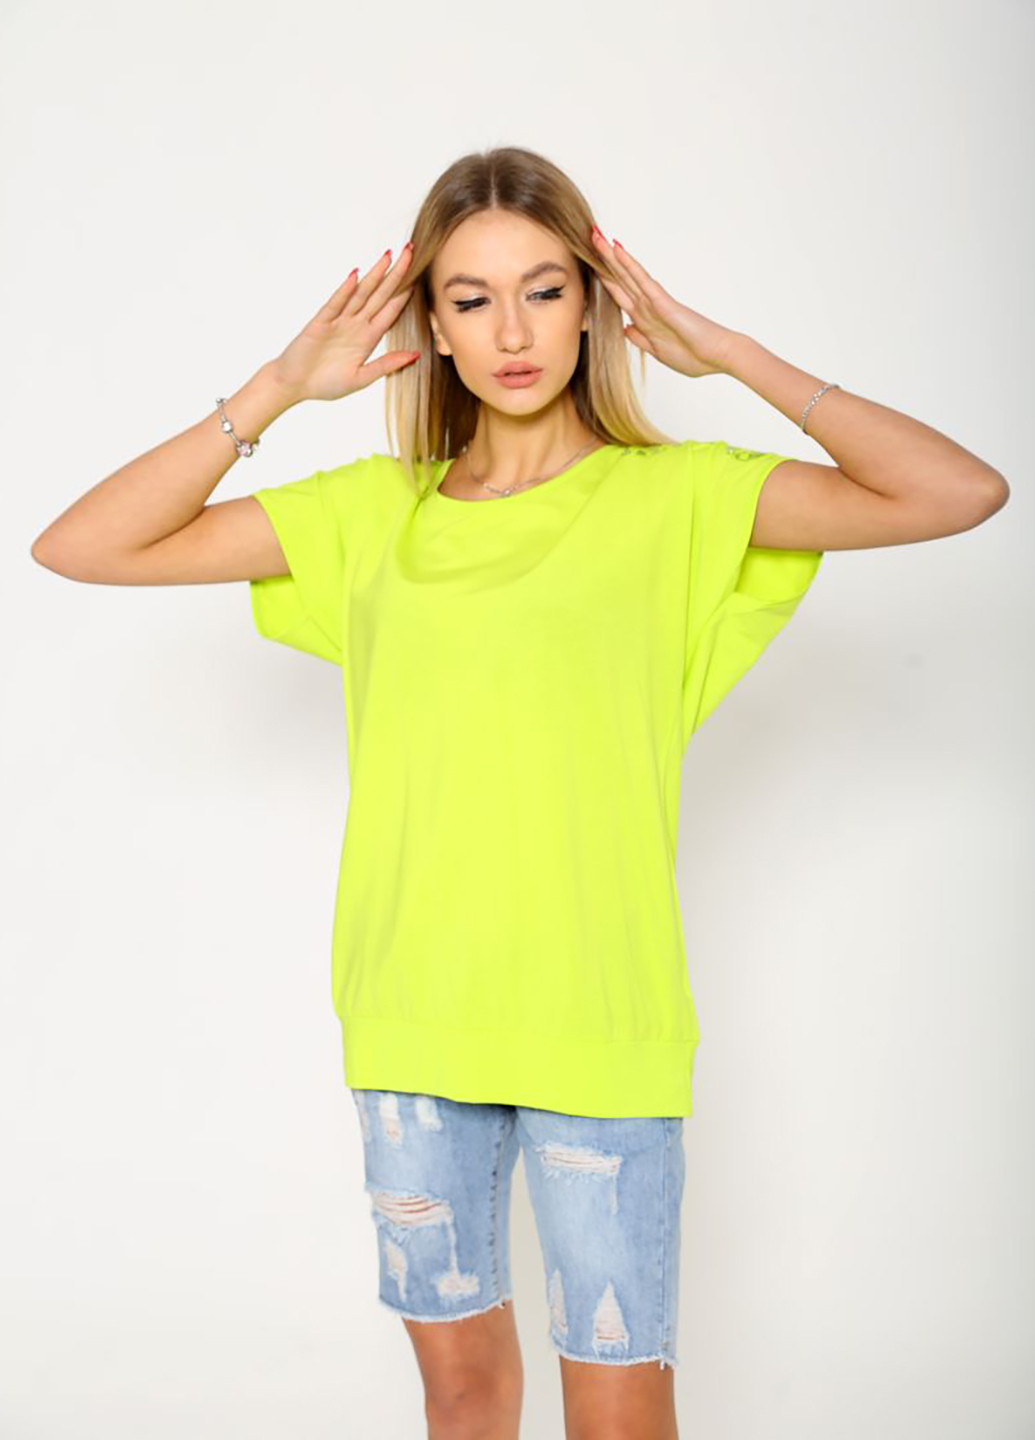 Кислотно-зеленая летняя футболка Ager